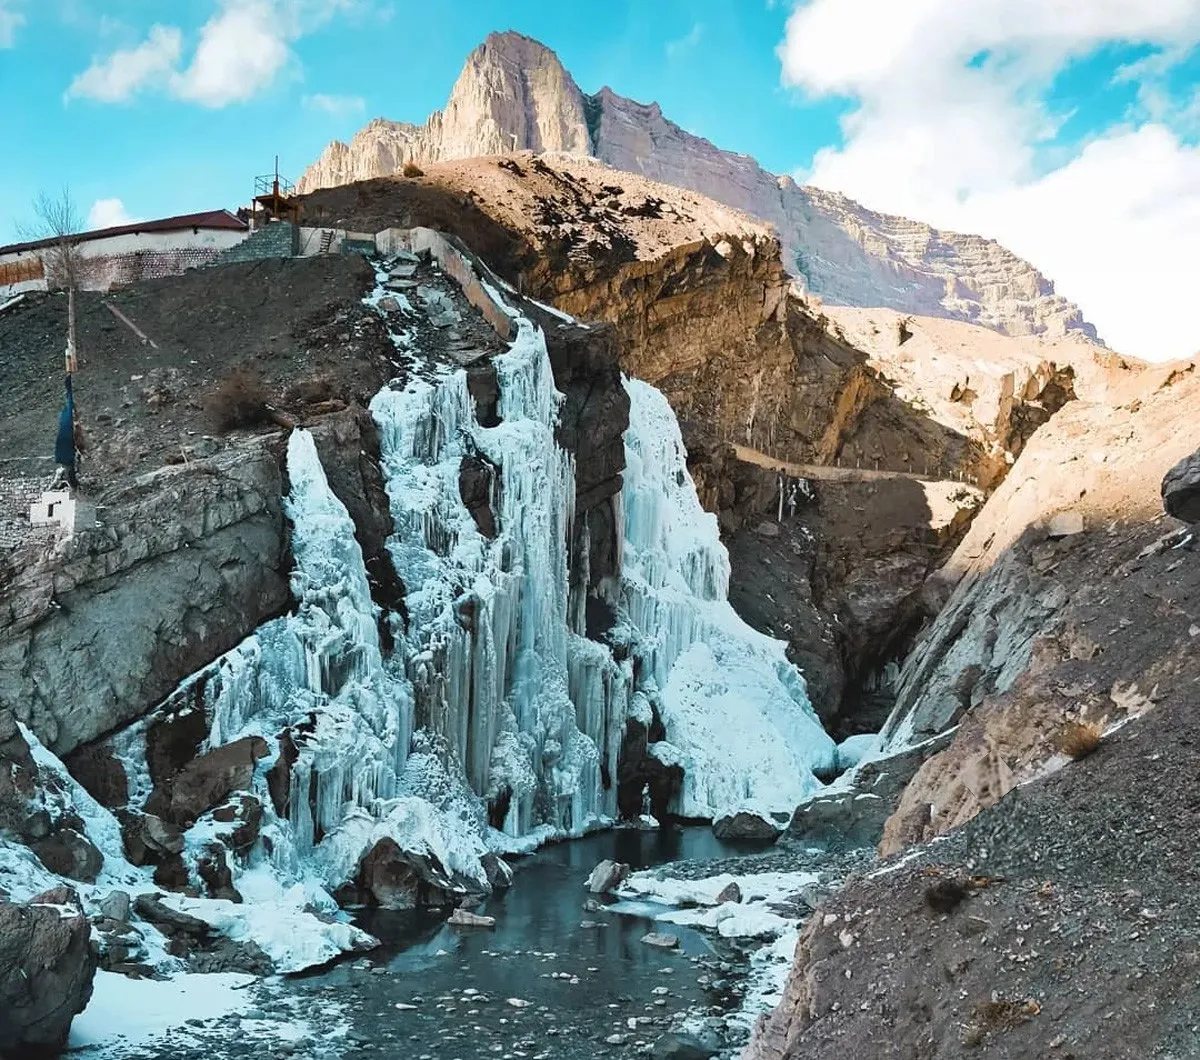 Lingti: The frozen waterfall in Spiti